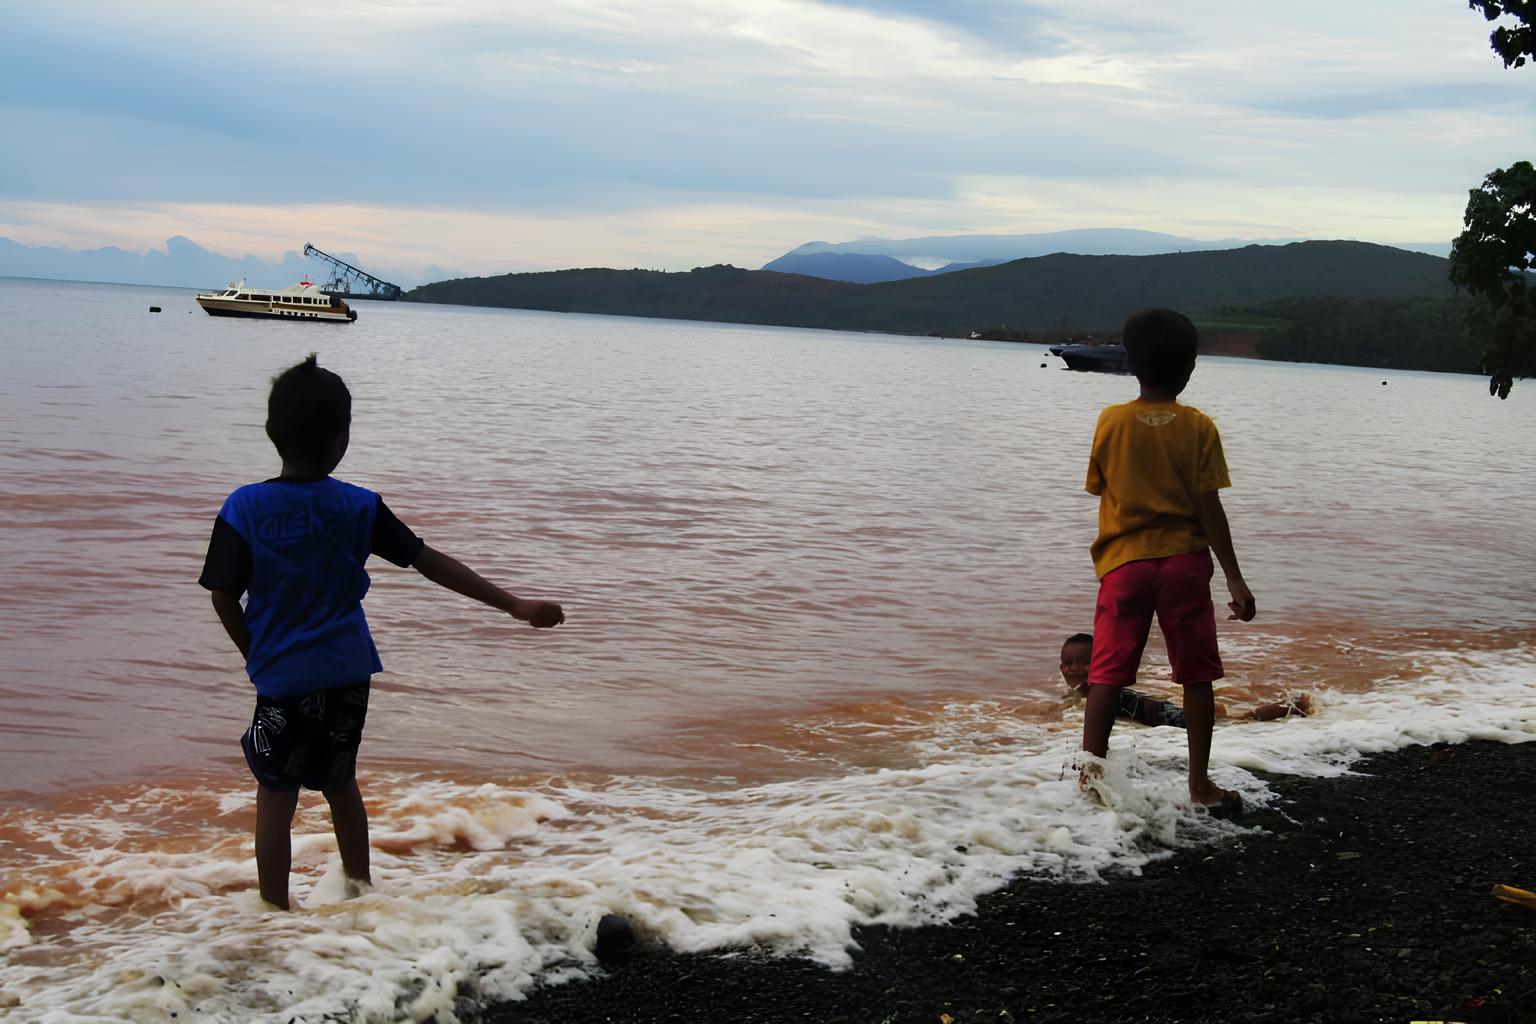 Anak-anak bermain di air yang disebut para peneliti sebagai 'kubangan lumpur' karena tingginya tingkat kontaminasi logam berat. (© Rabul Sawal/Mongabay Indonesia)